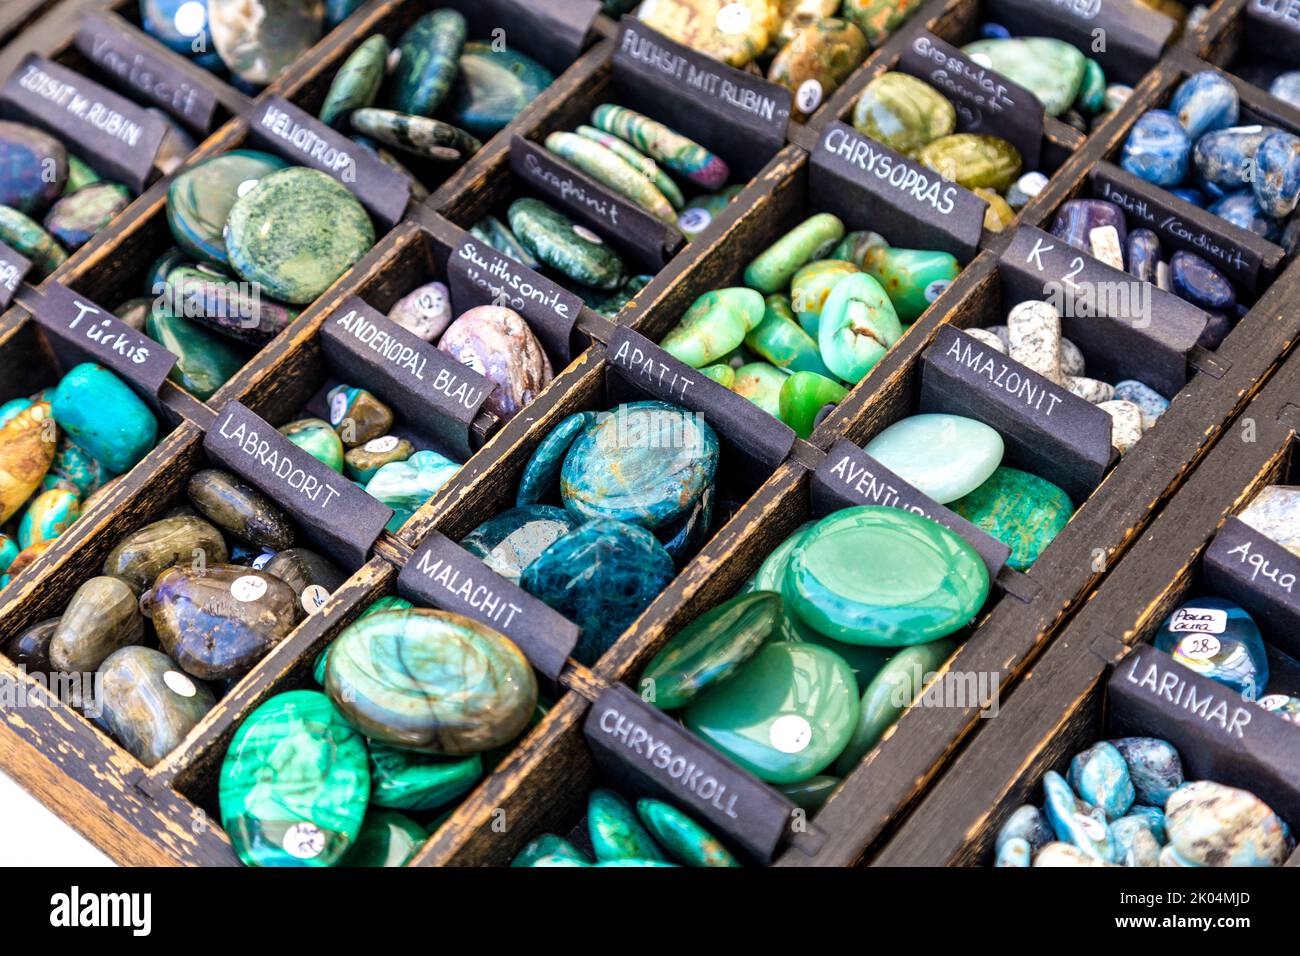 Selección de piedras preciosas pulidas en el mercado de Waisenhausplatz (Markt Waisenhausplatz), Berna, Suiza Foto de stock